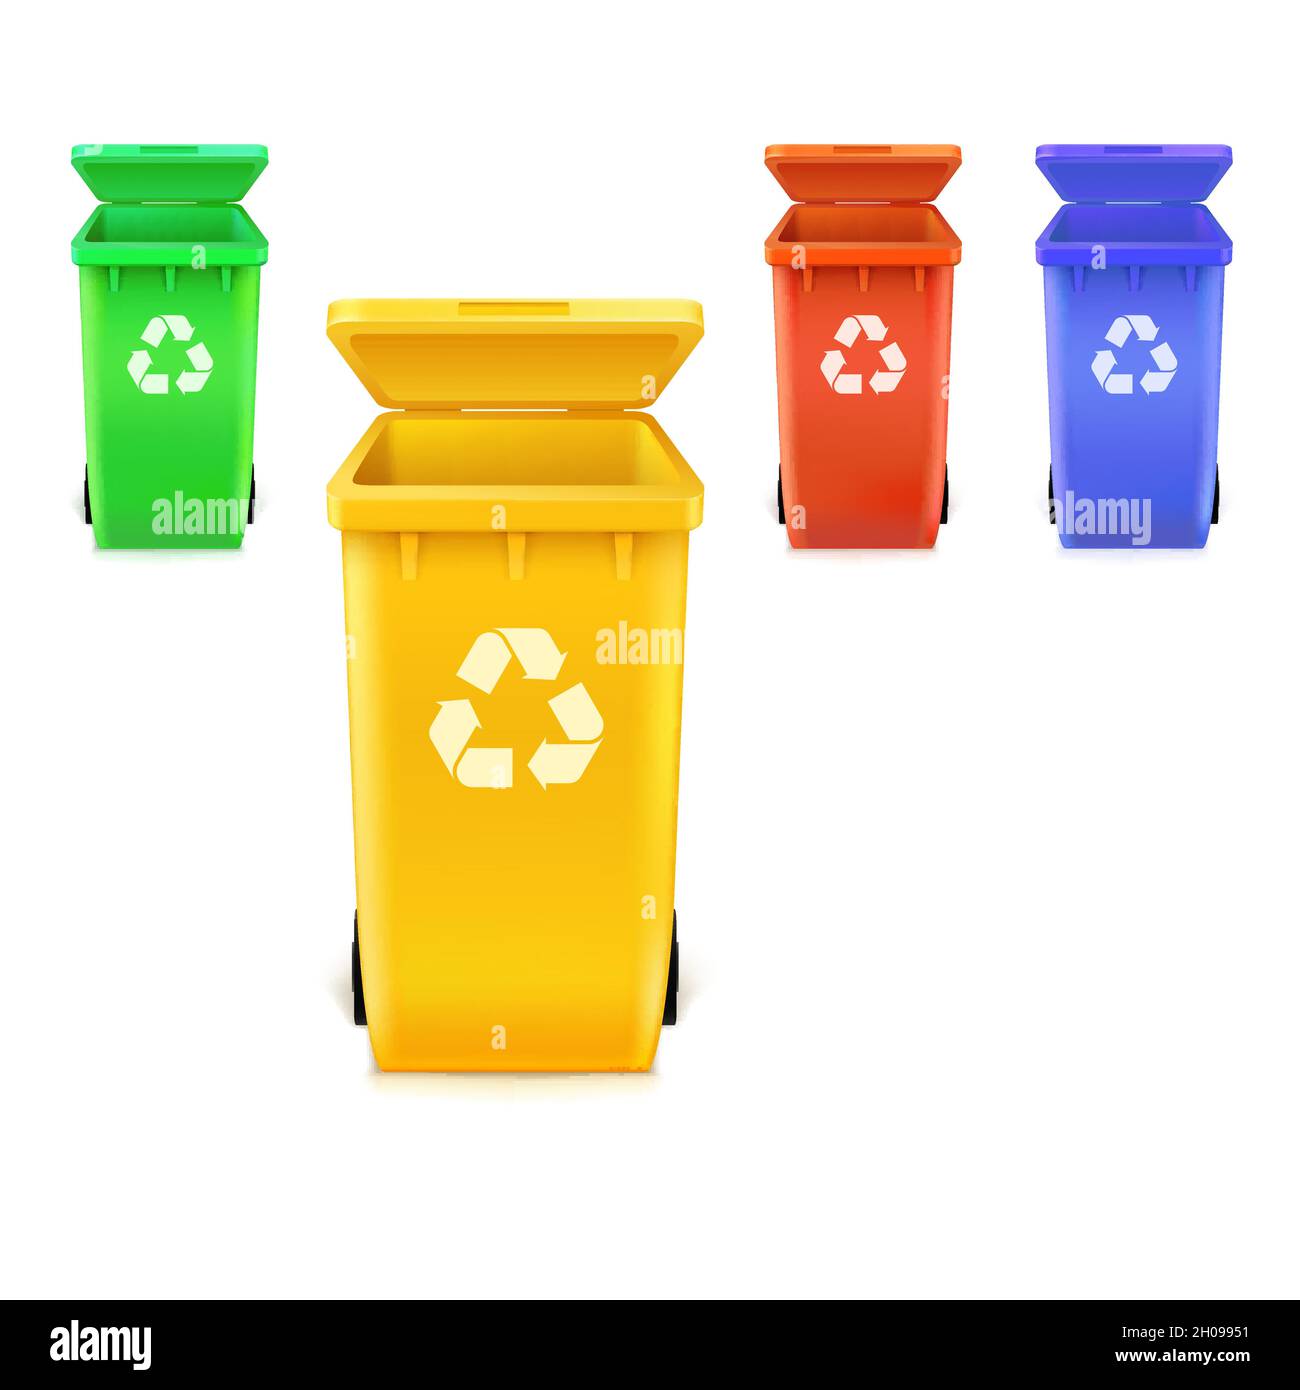 Satz von Symbolen Mülltonnen auf Weiß isoliert. Symbol für umweltfreundliches Recycling von Abfällen auf der Vorderseite der Behälter. Stock Vektor